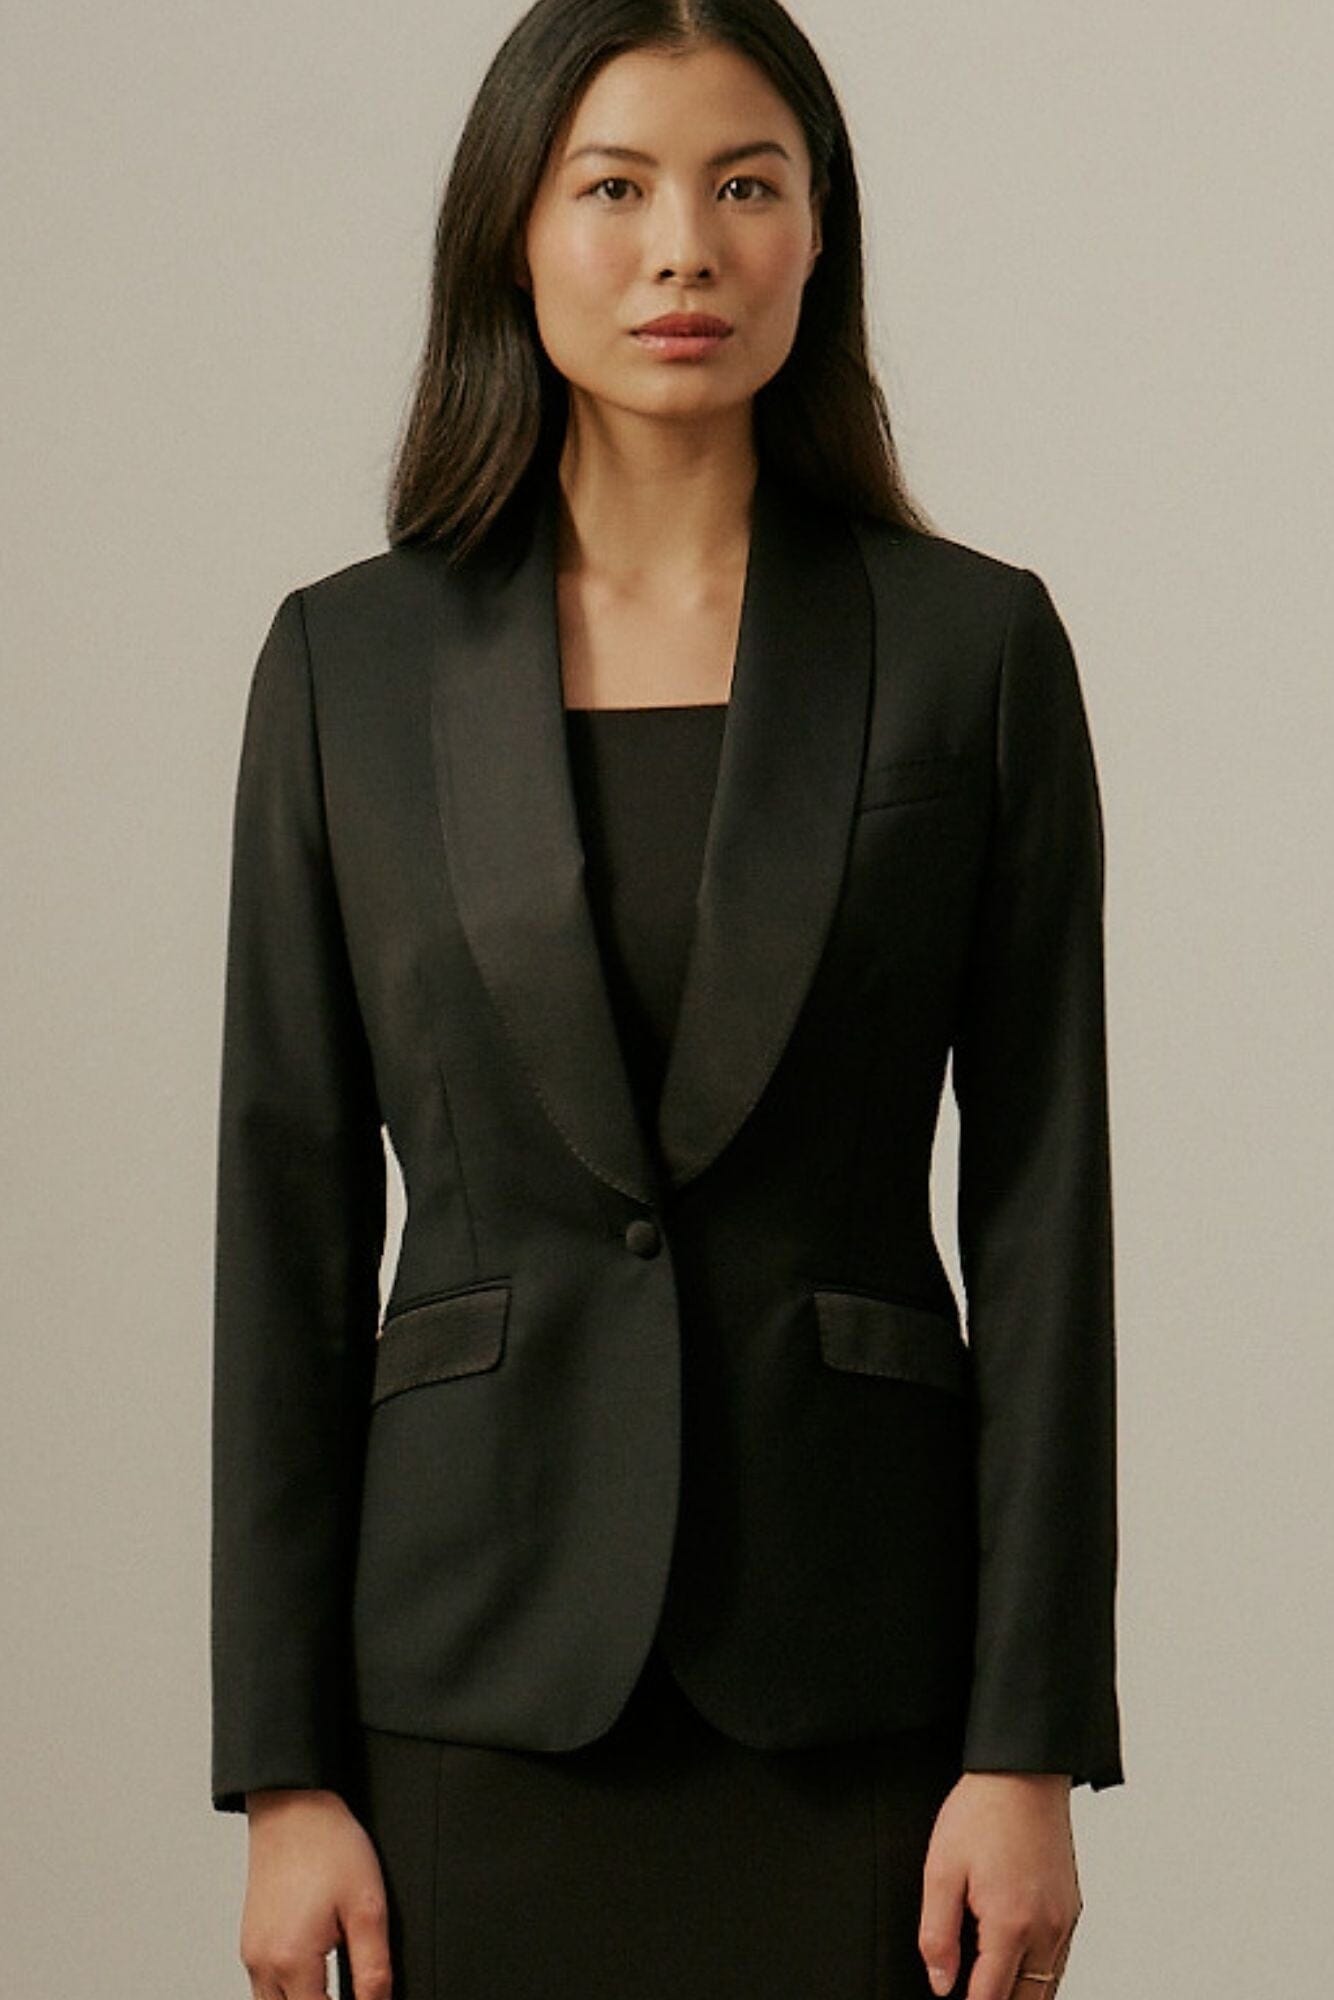 Celine Shawl Tuxedo Suit - Black Wool